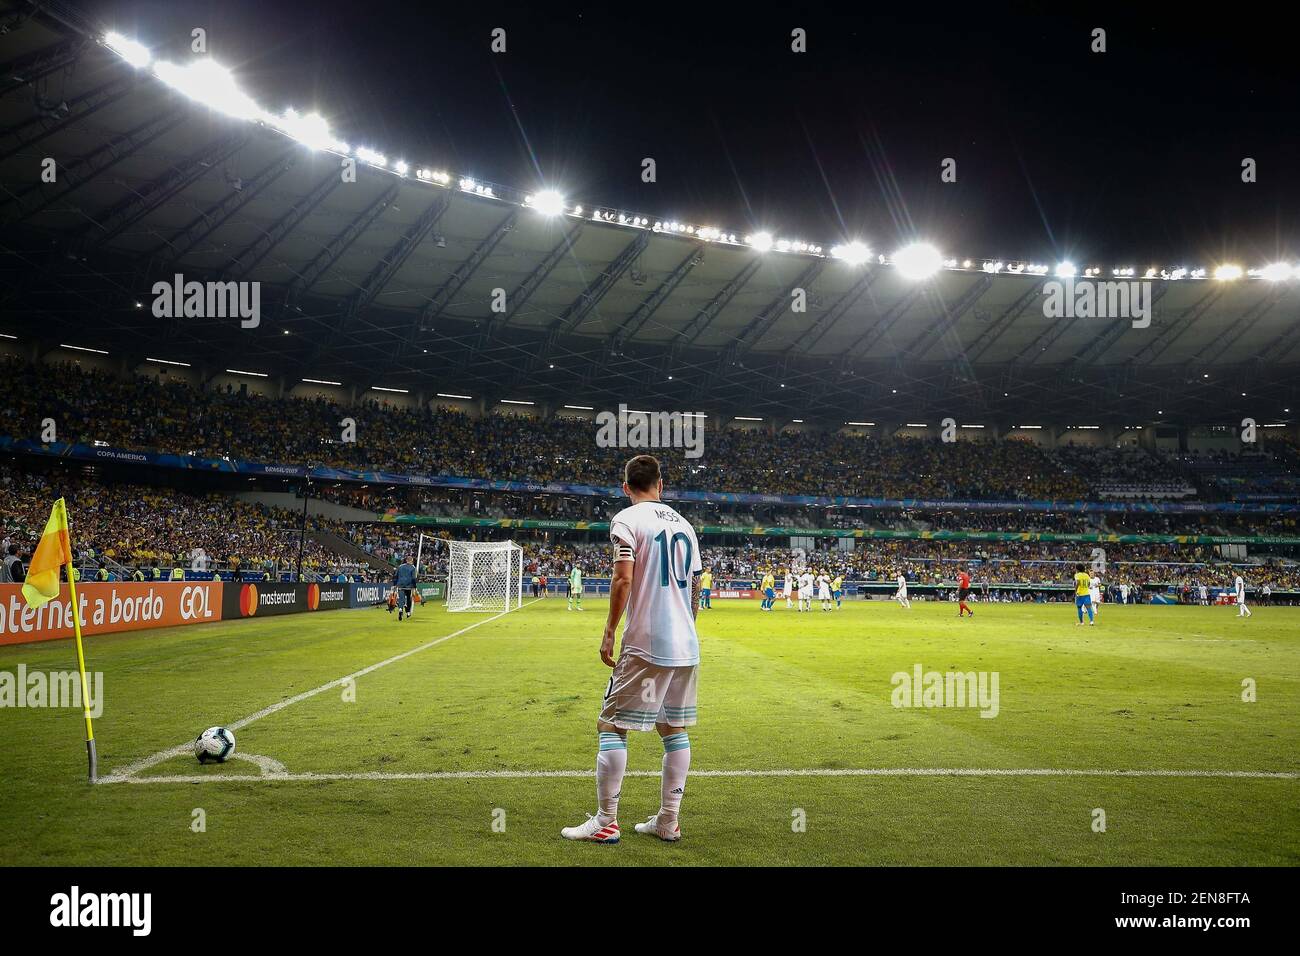 Góc sút phạt của Messi sẽ làm bạn phát cuồng với những bức ảnh đẹp tuyệt vời. Hãy tận hưởng cảm giác mạnh mẽ và hào hứng khi theo dõi các bức ảnh đỉnh cao này. Nhấp chuột để truy cập ngay lập tức!